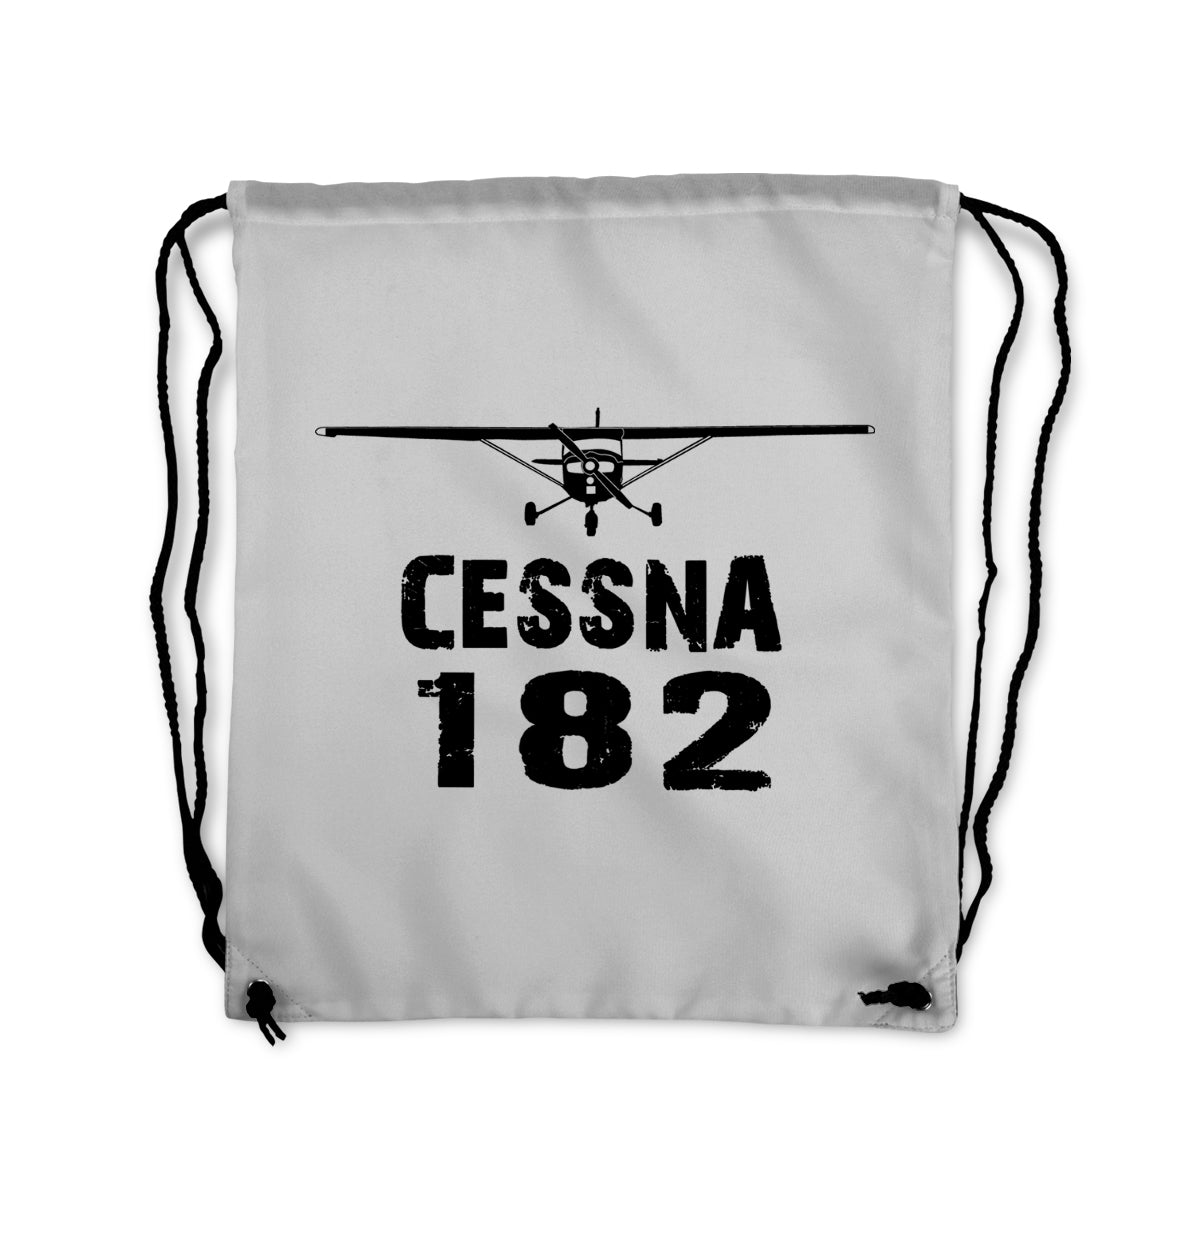 Cessna 182 & Plane Designed Drawstring Bags